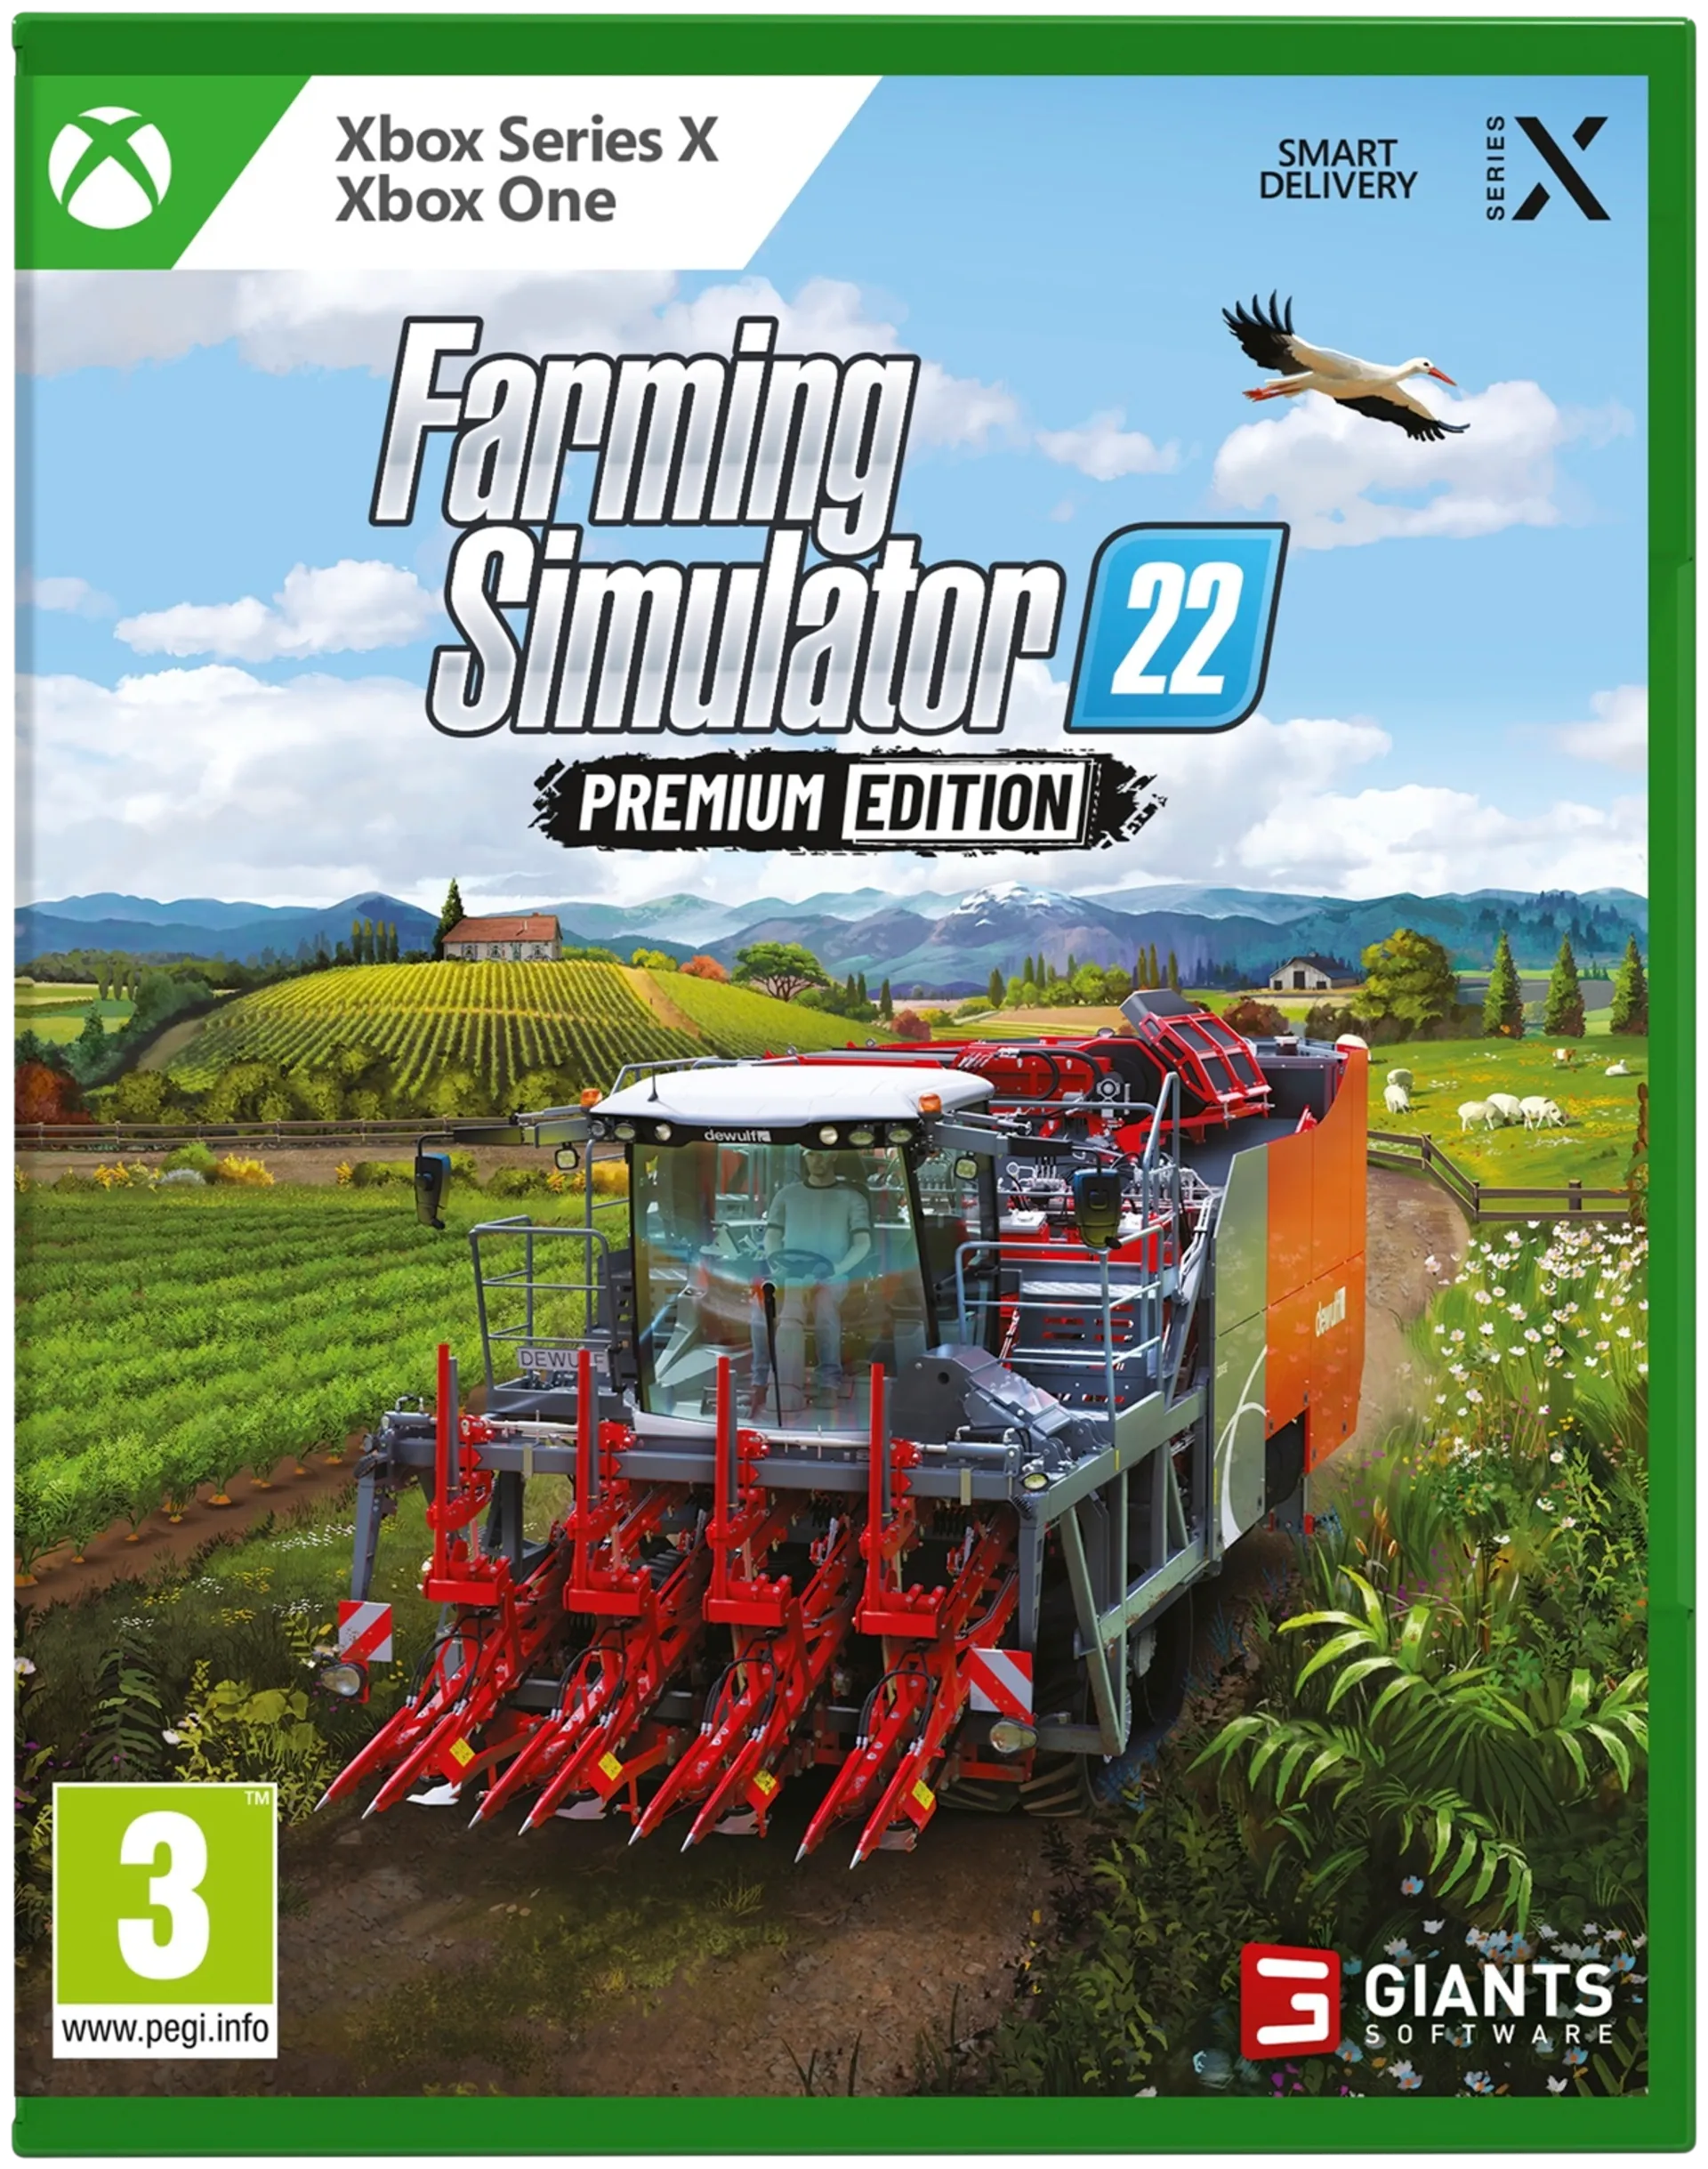 Xbox Farming Simulator 22 Premium Edition